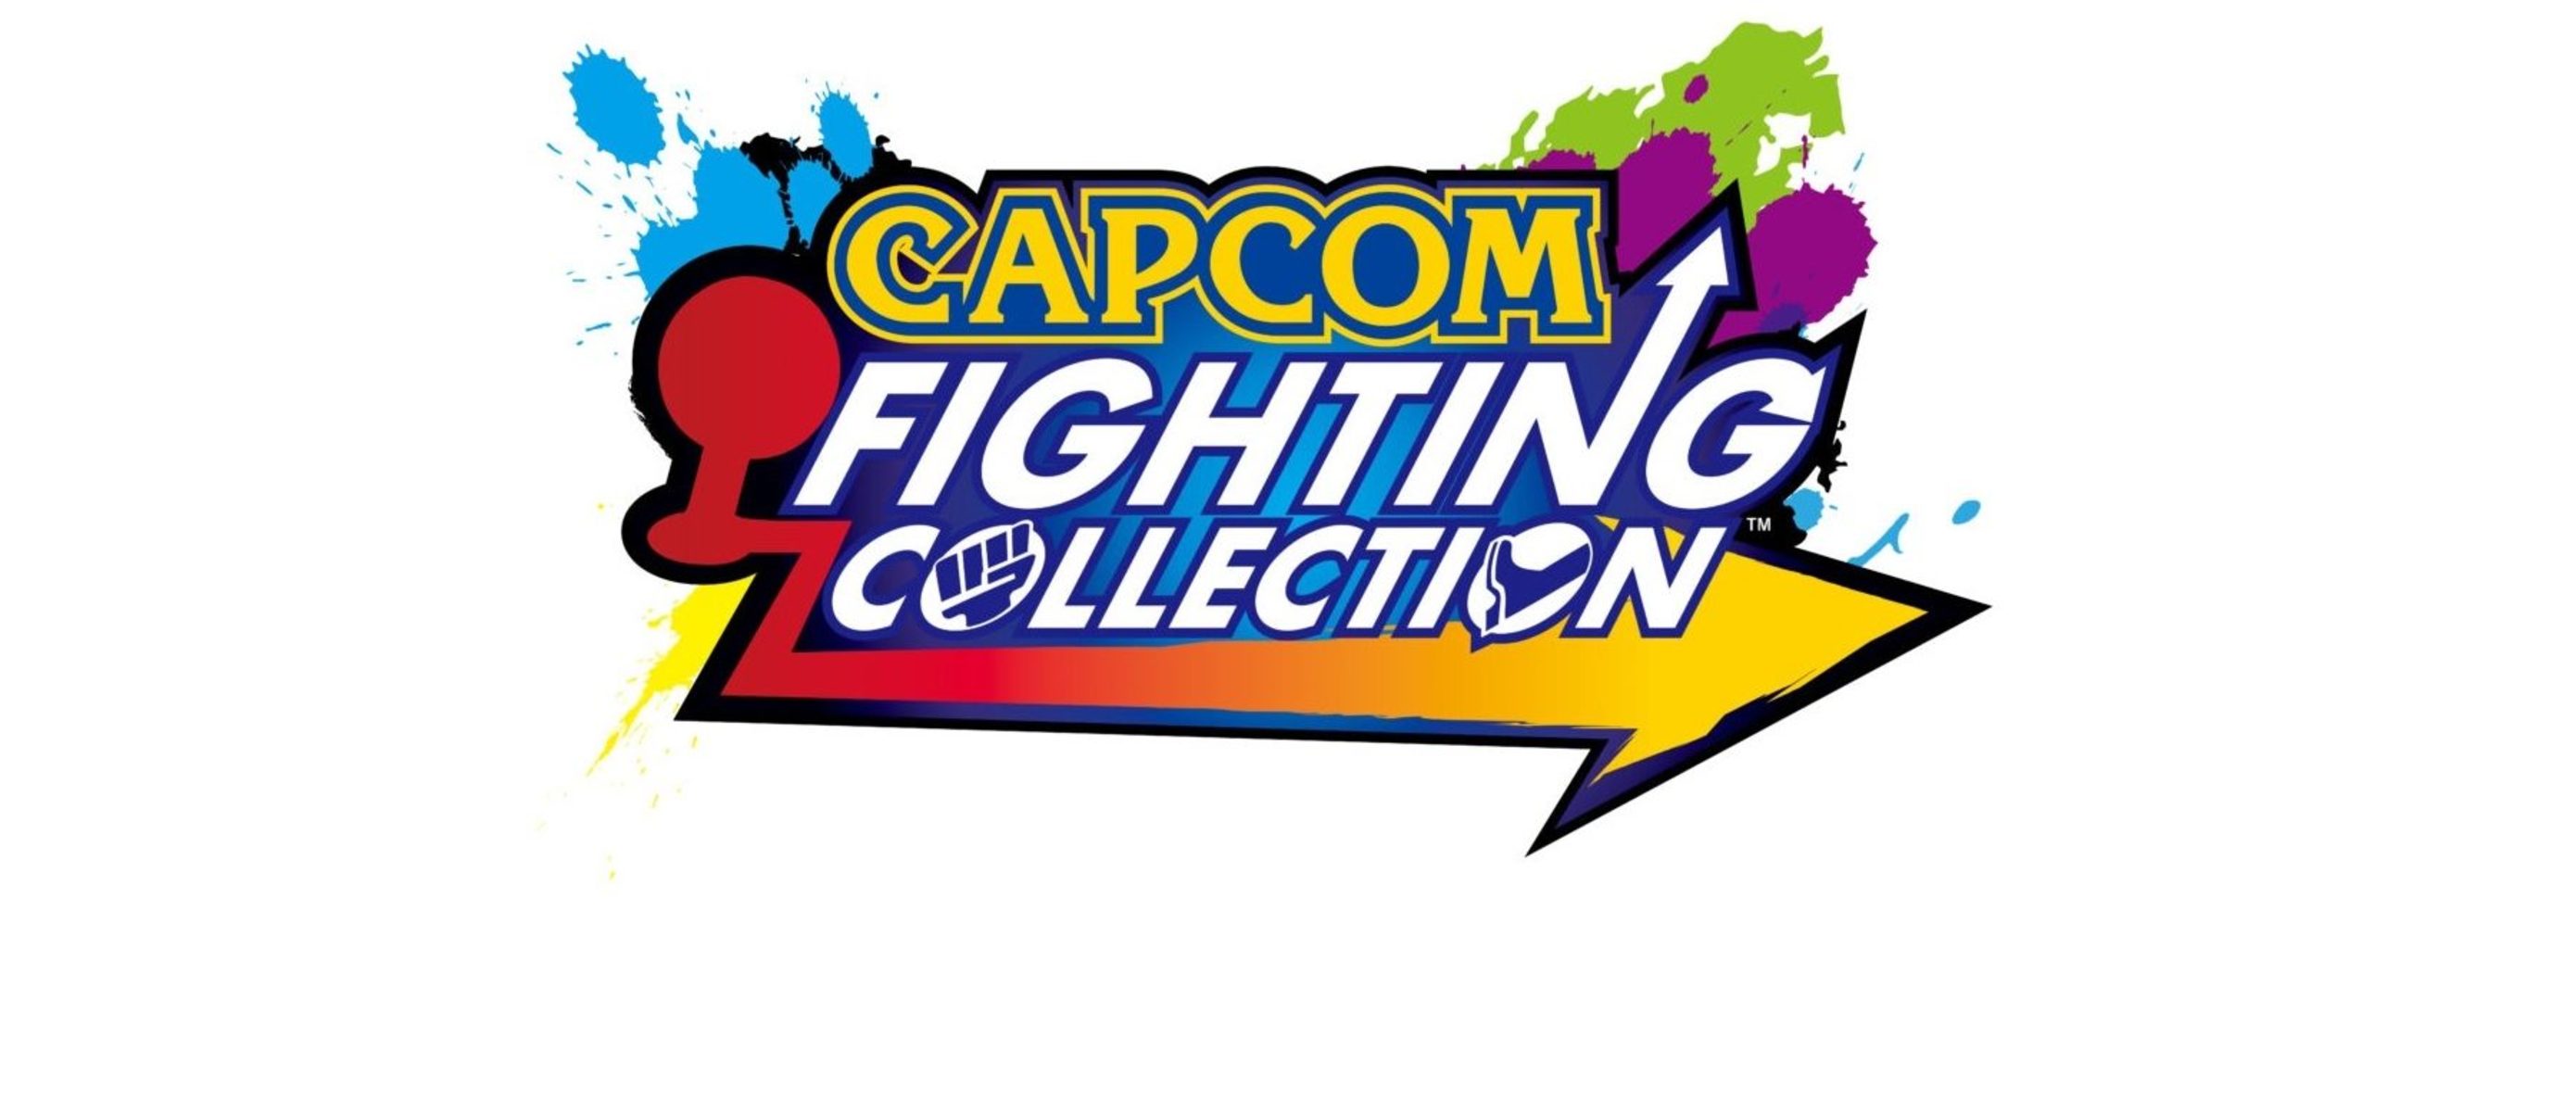 Capcom collection. Capcom Fighting. Fighting collection. Девиз Capcom. Файтинг от Capcom.